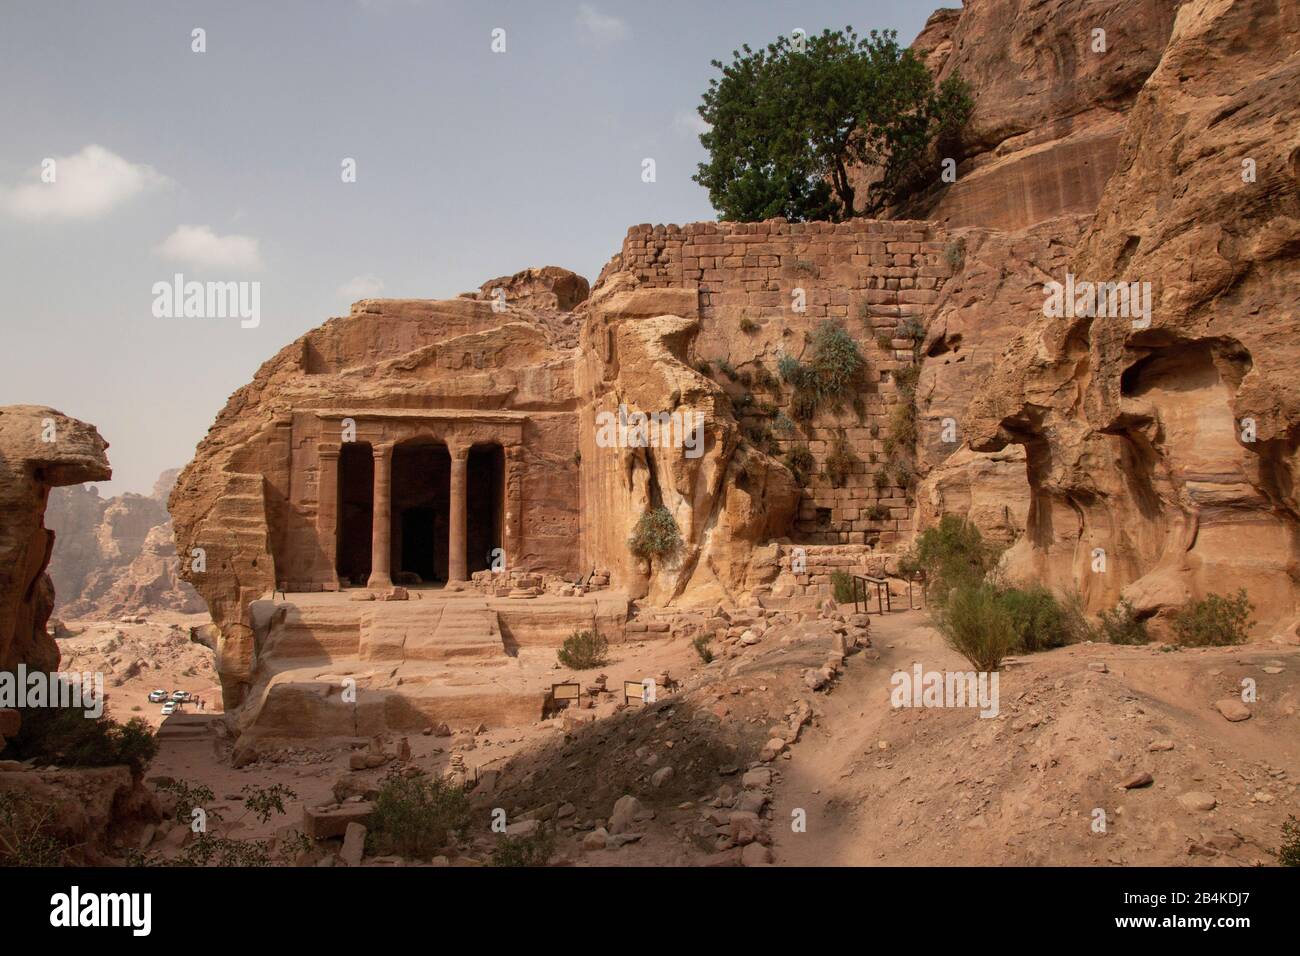 Jordania, Petra, vista de la ciudad rocosa Petra, declarada Patrimonio de la Humanidad por la UNESCO. Foto de stock